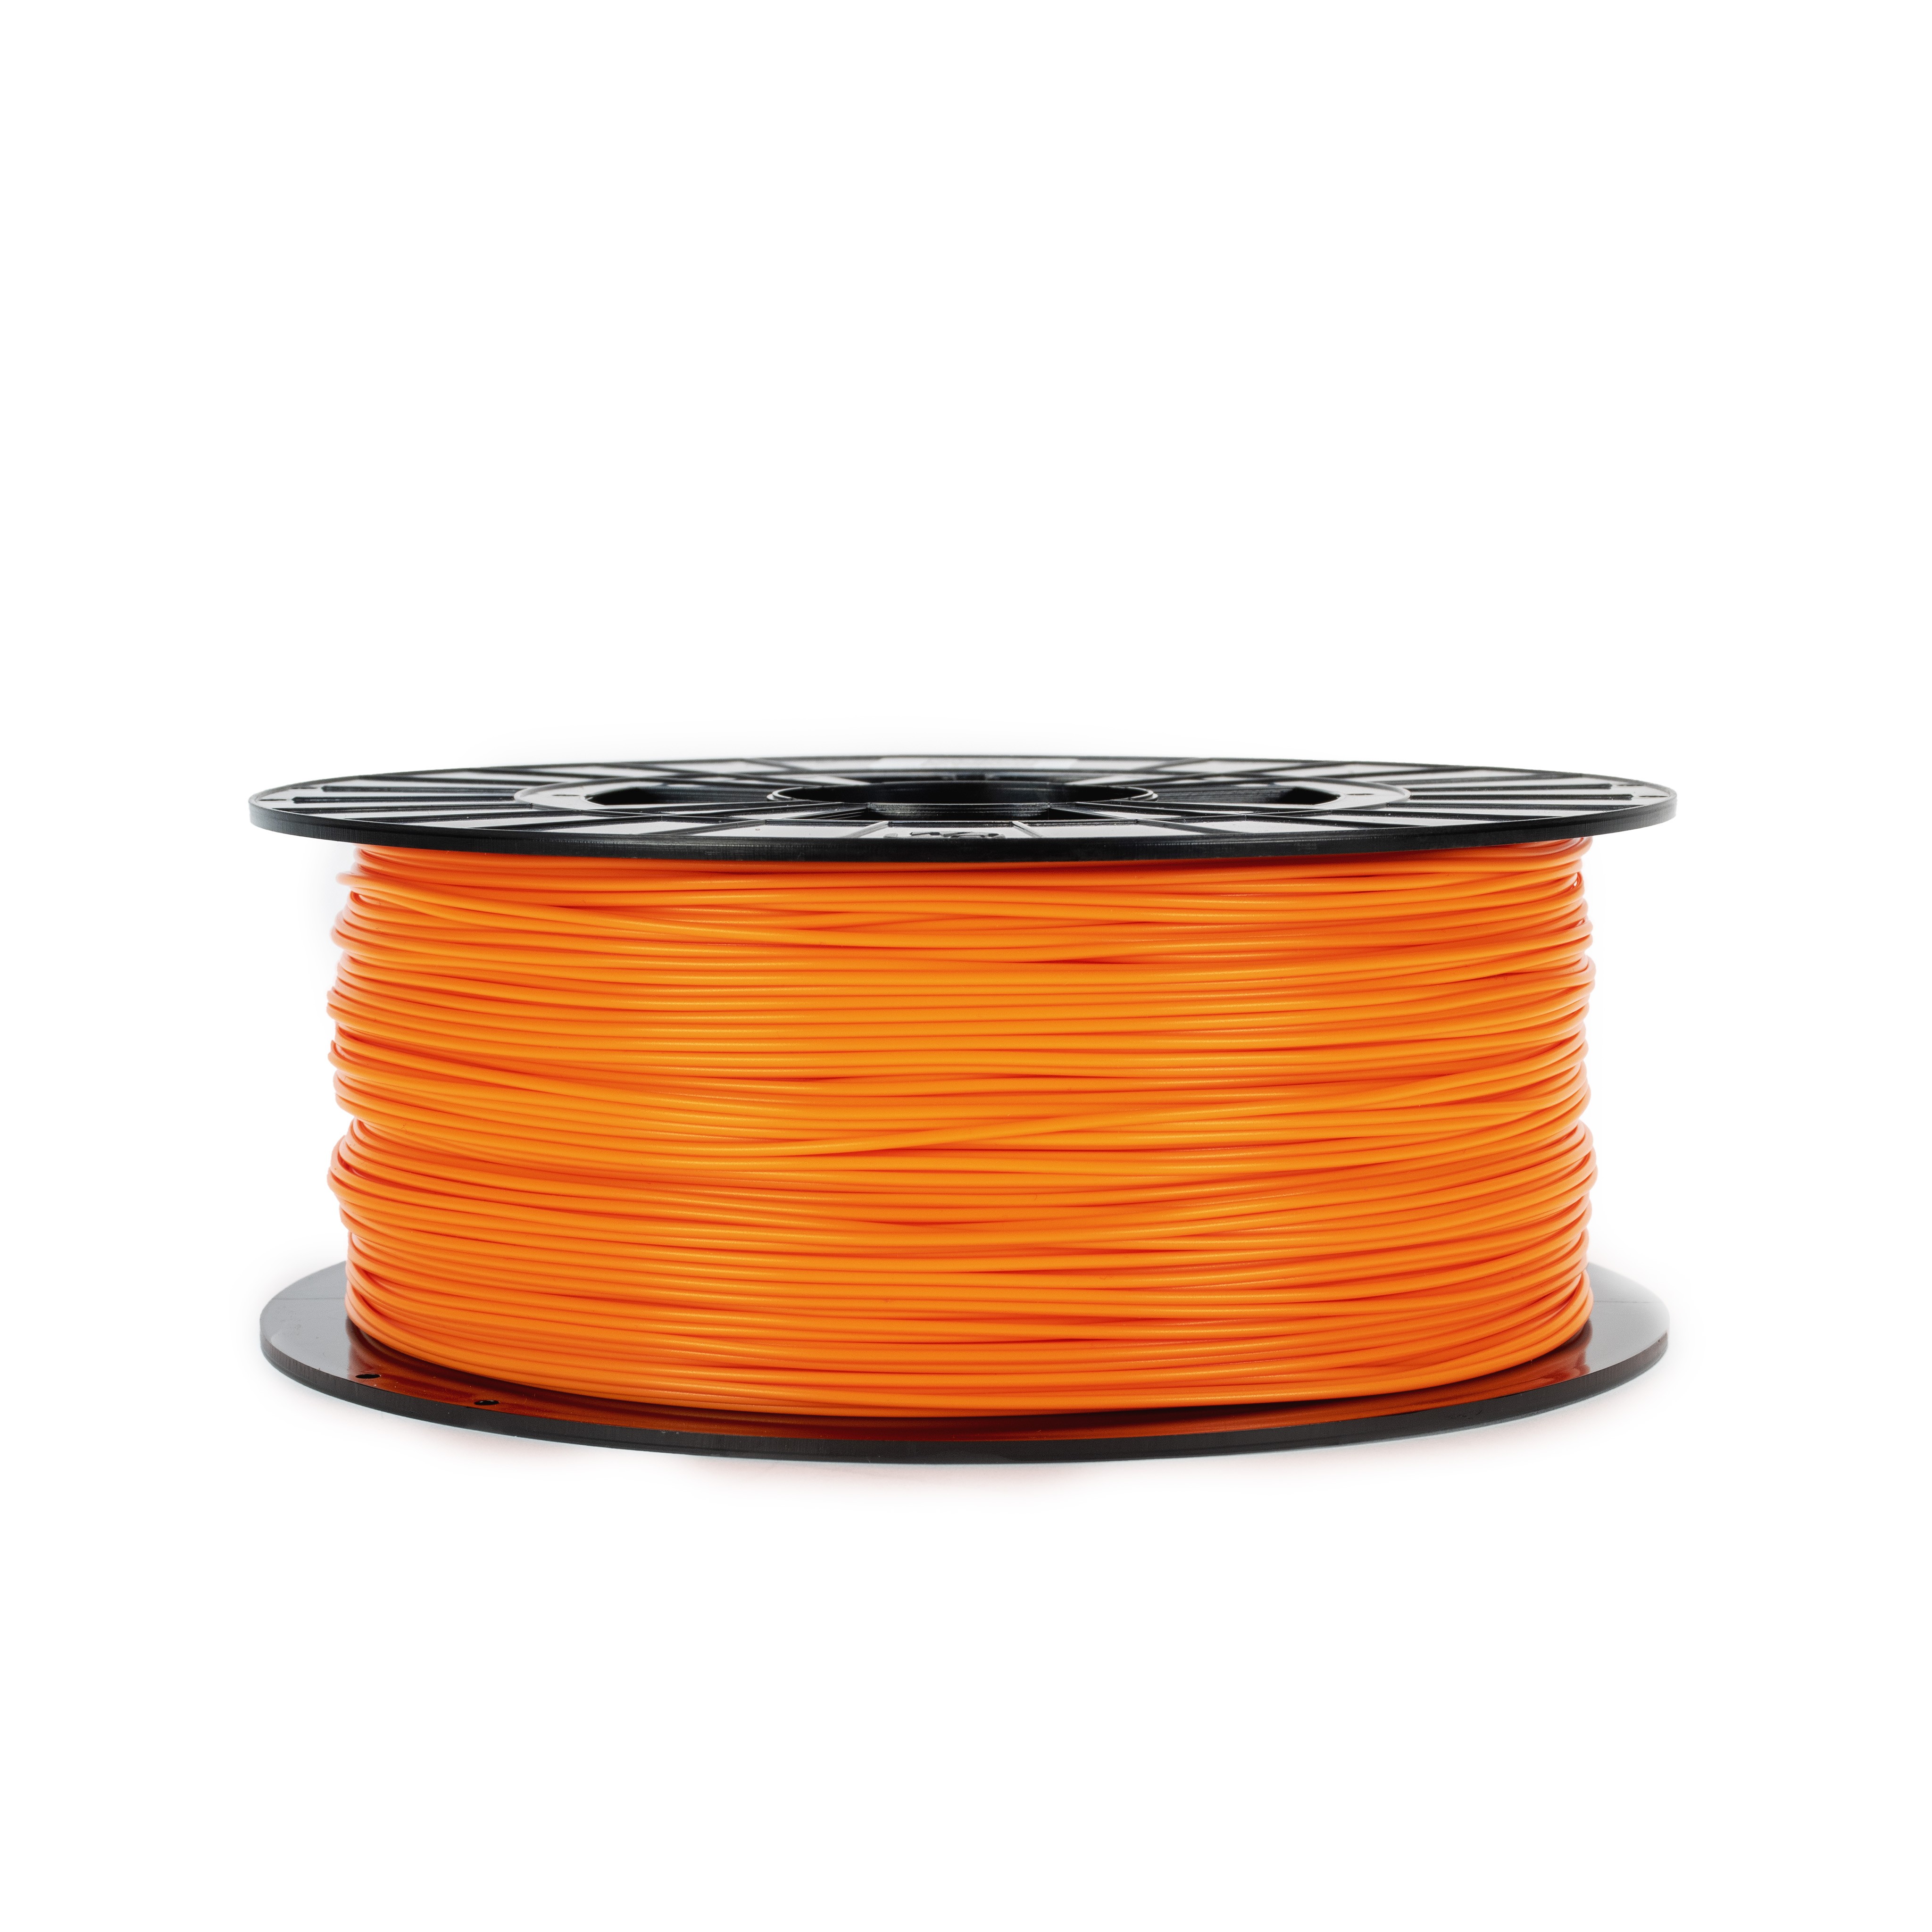 Orange Polylactic Acid And PLA 3D Printer PLA Filament at Rs 2000